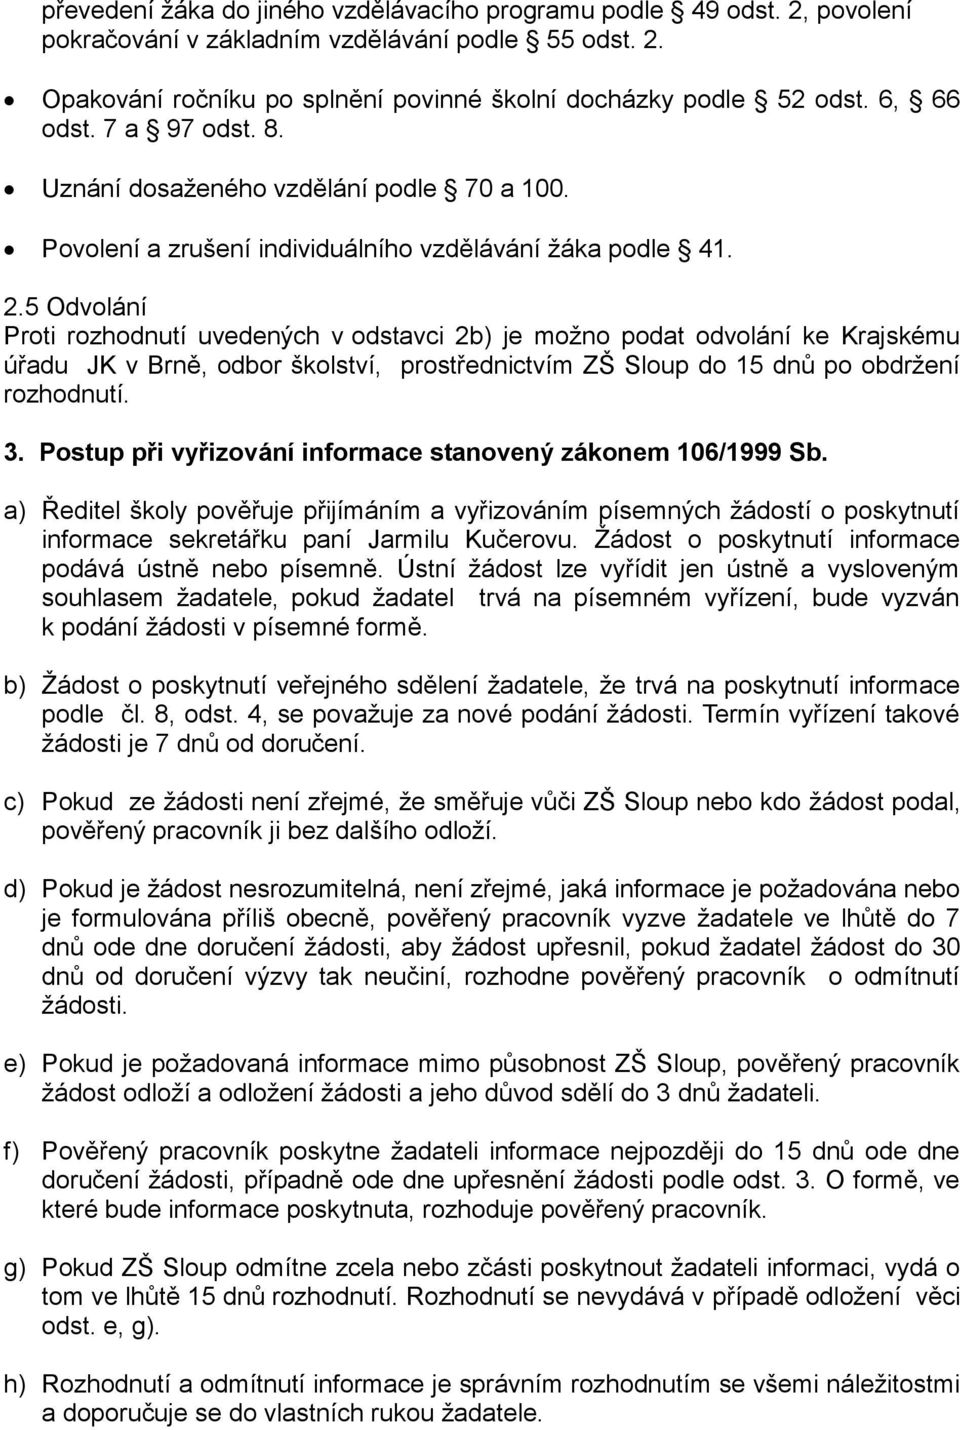 5 Odvolání Proti rozhodnutí uvedených v odstavci 2b) je možno podat odvolání ke Krajskému úřadu JK v Brně, odbor školství, prostřednictvím ZŠ Sloup do 15 dnů po obdržení rozhodnutí. 3.